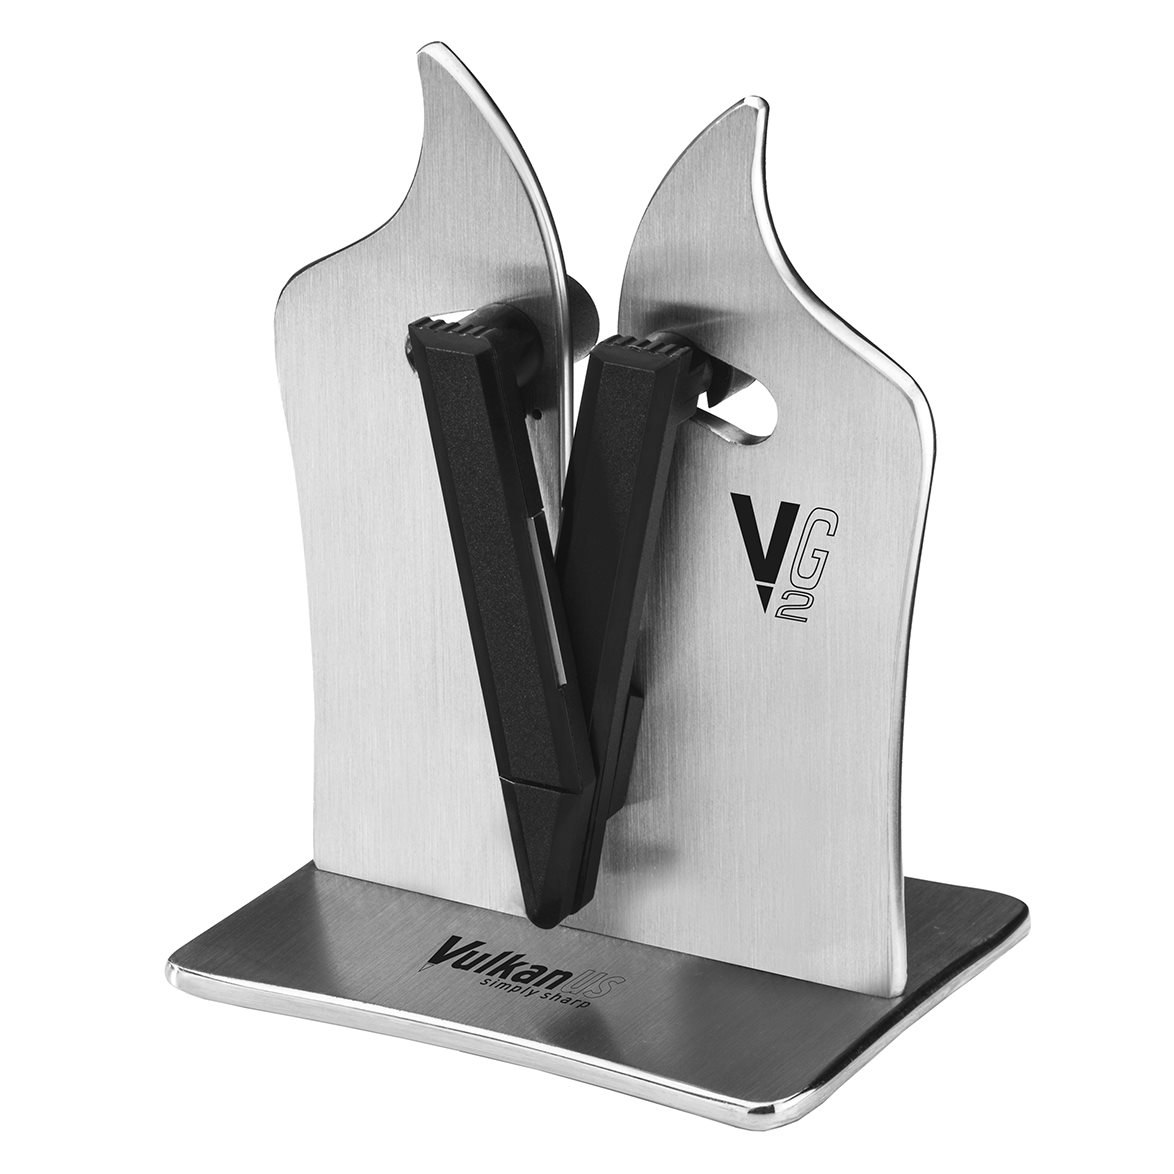 https://royaldesign.com/image/2/vulkanus-vulkanus-vg2-professional-knife-sharpener-0?w=800&quality=80